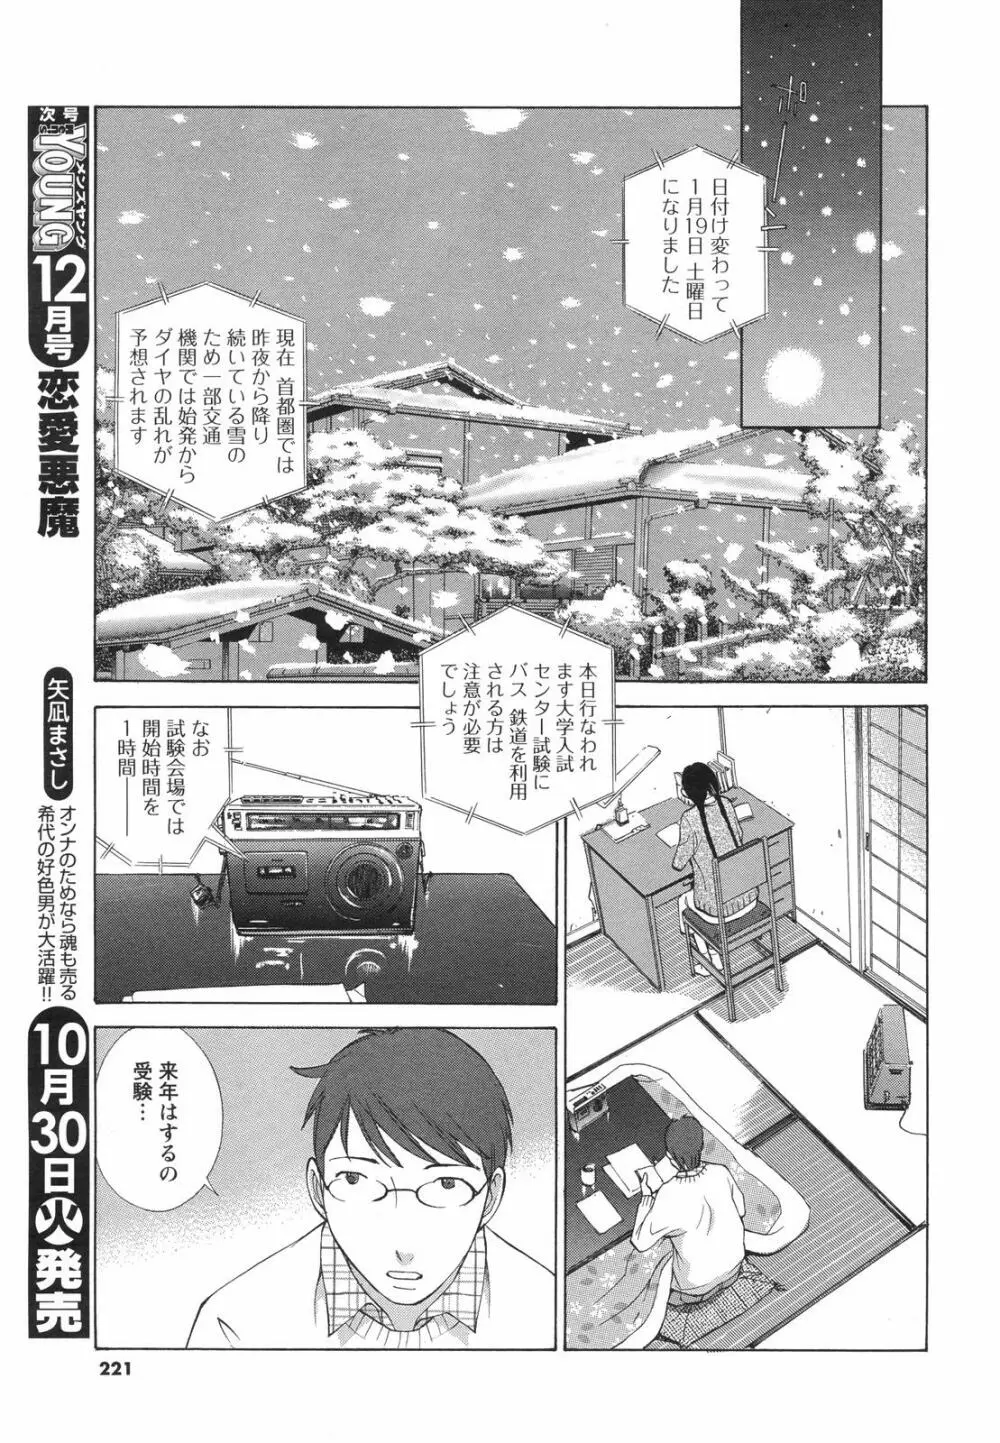 メンズヤングスペシャルIKAZUCHI雷 Vol.4 2007年12月号増刊 221ページ